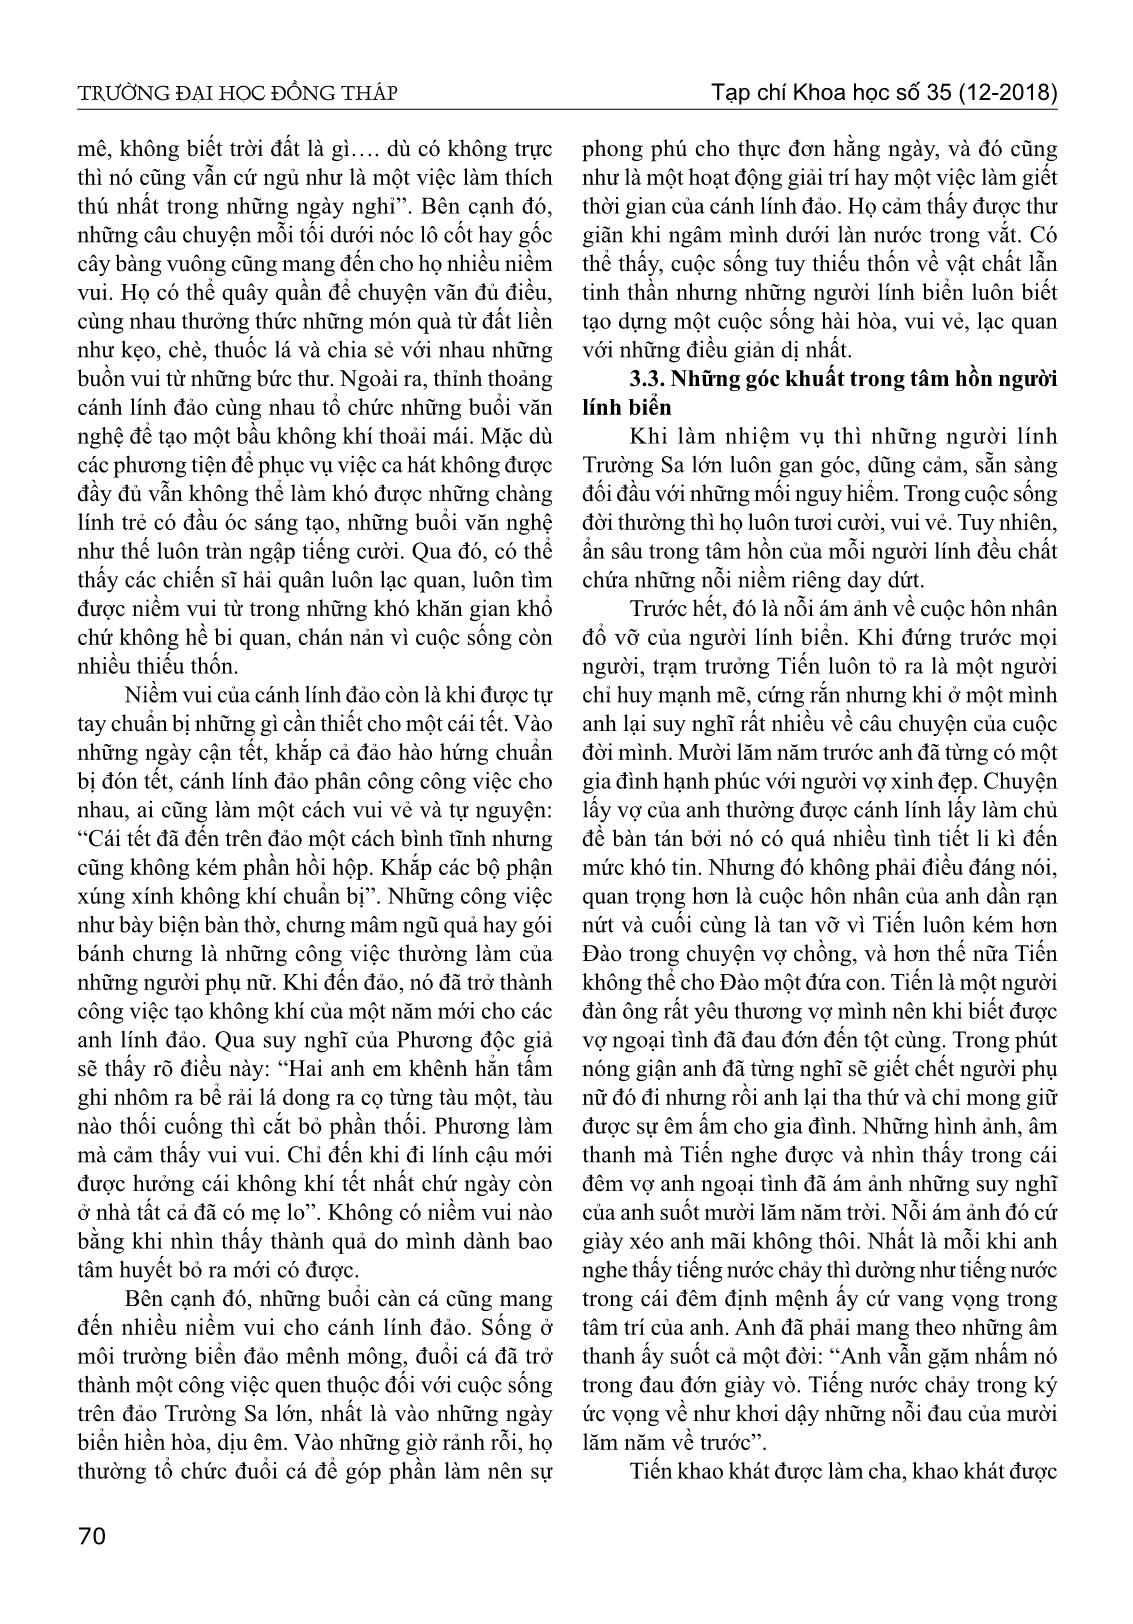 Chân dung người lính biển trong tiểu thuyết biển xanh màu lá của Nguyễn Xuân Thủy trang 7